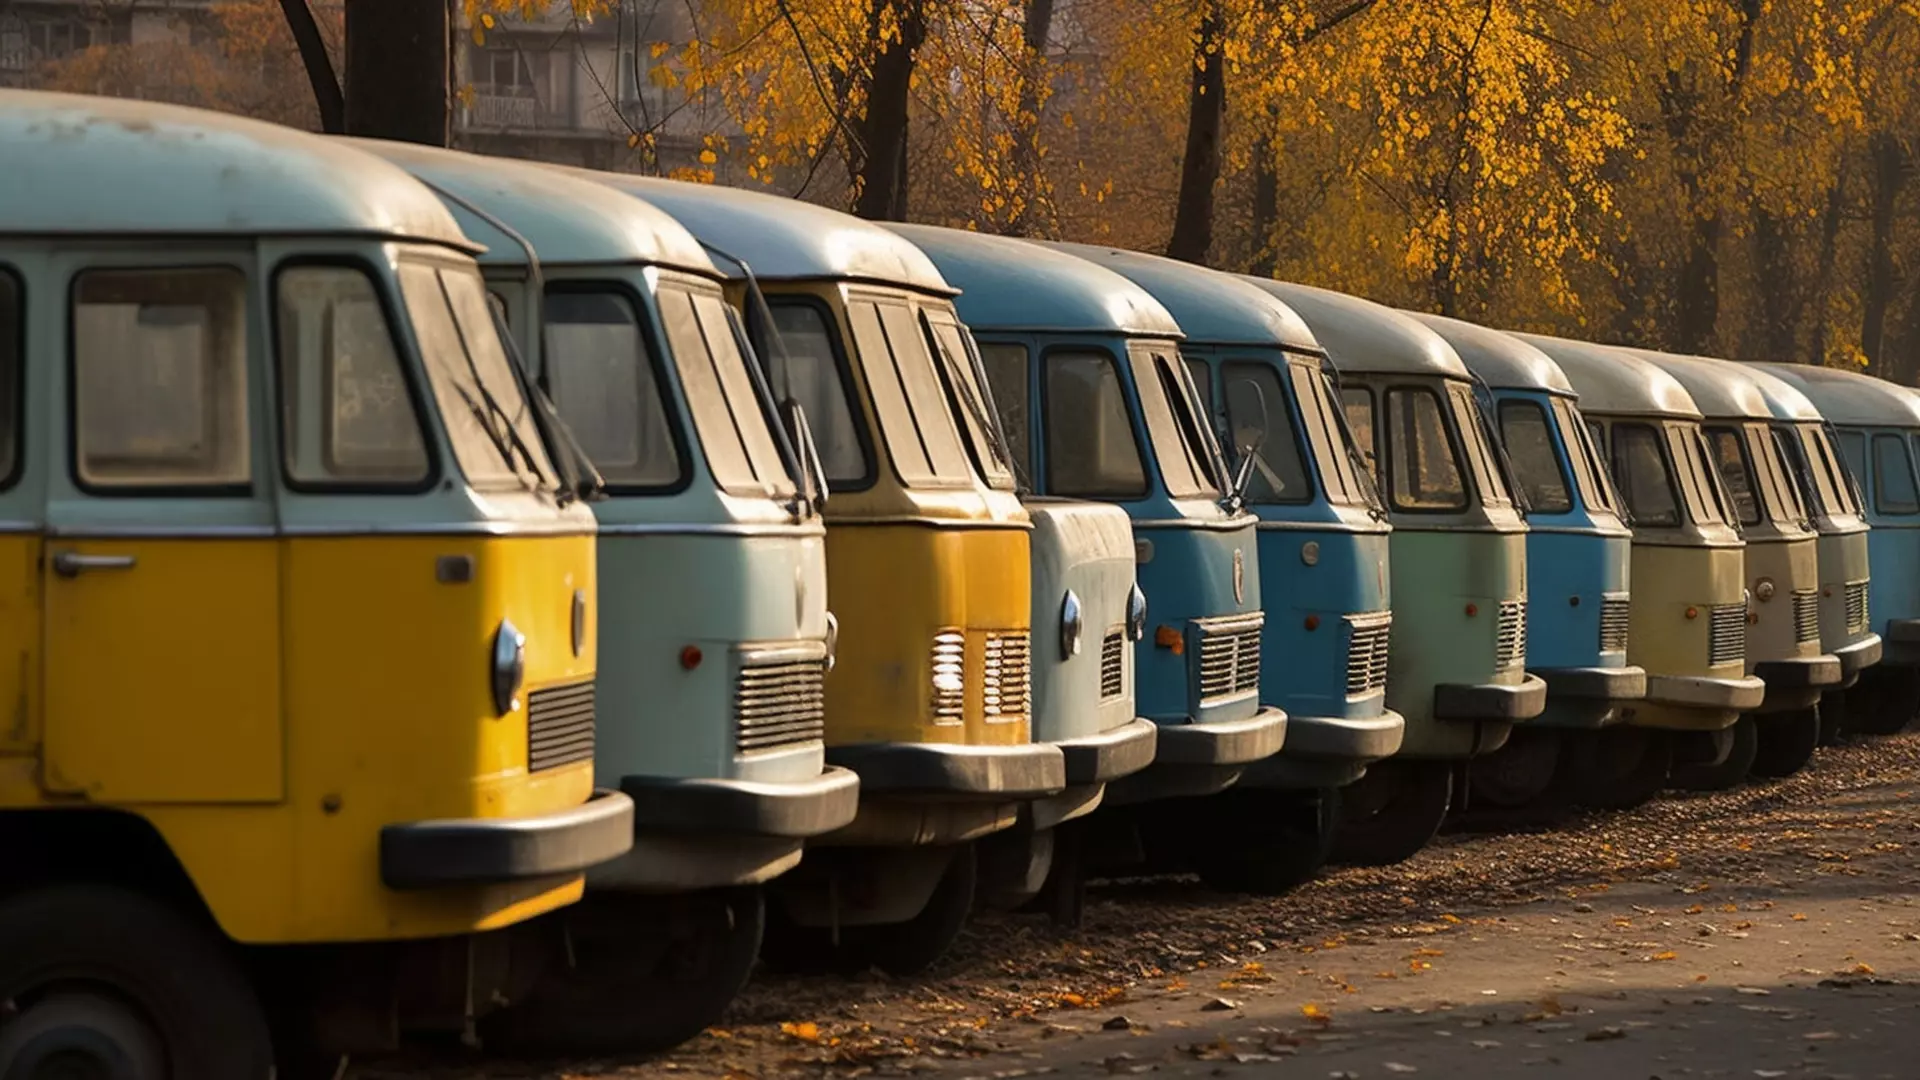 22 автобуса в Екатеринбурге изменят свои номера